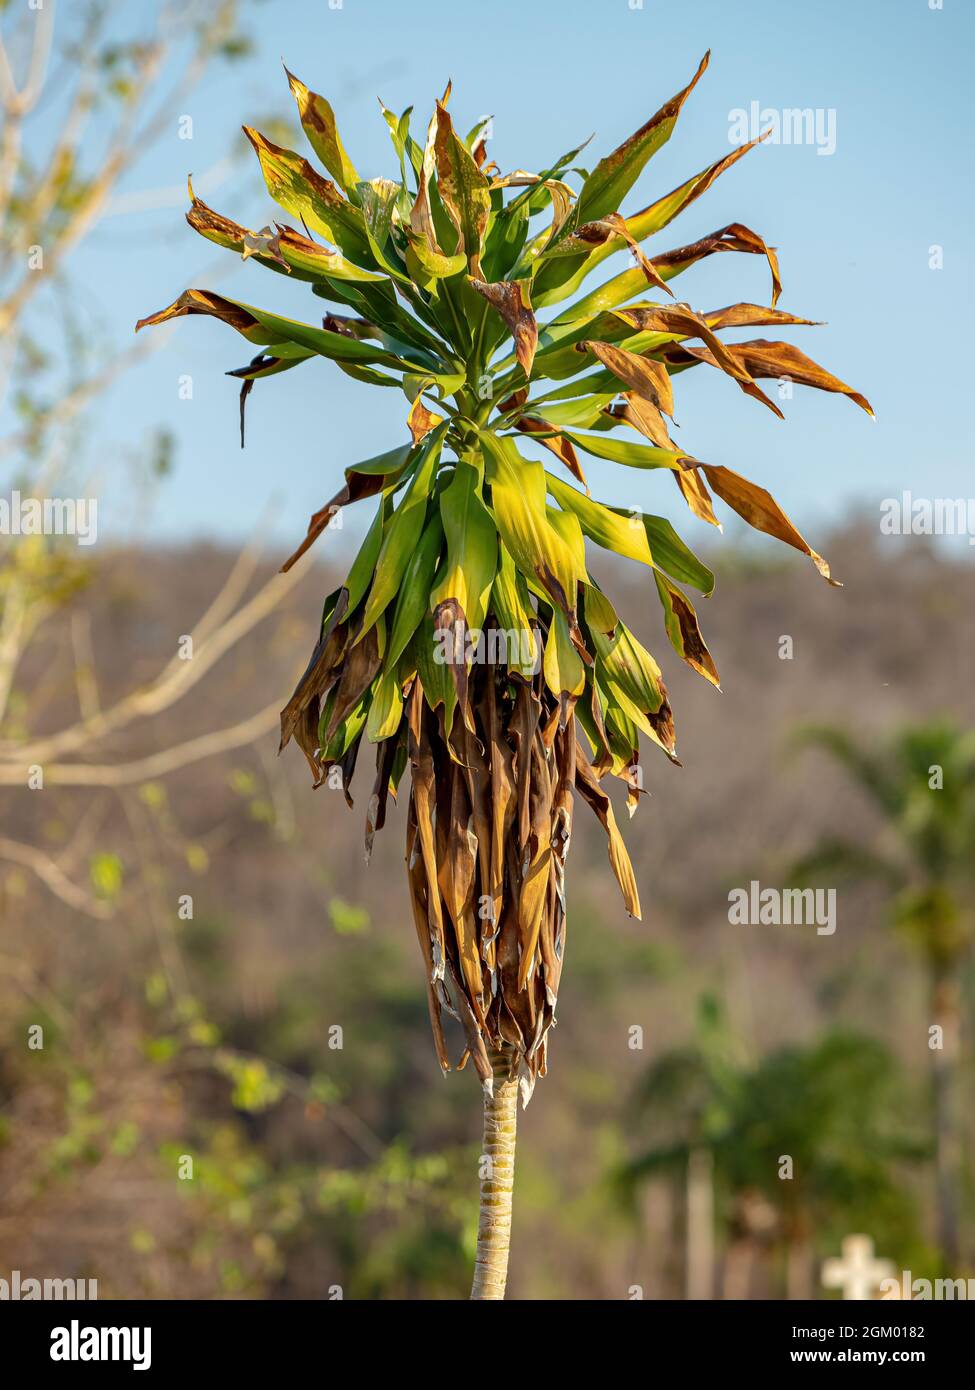 Green monocotyledonous tree of the Family Asparagaceae Stock Photo